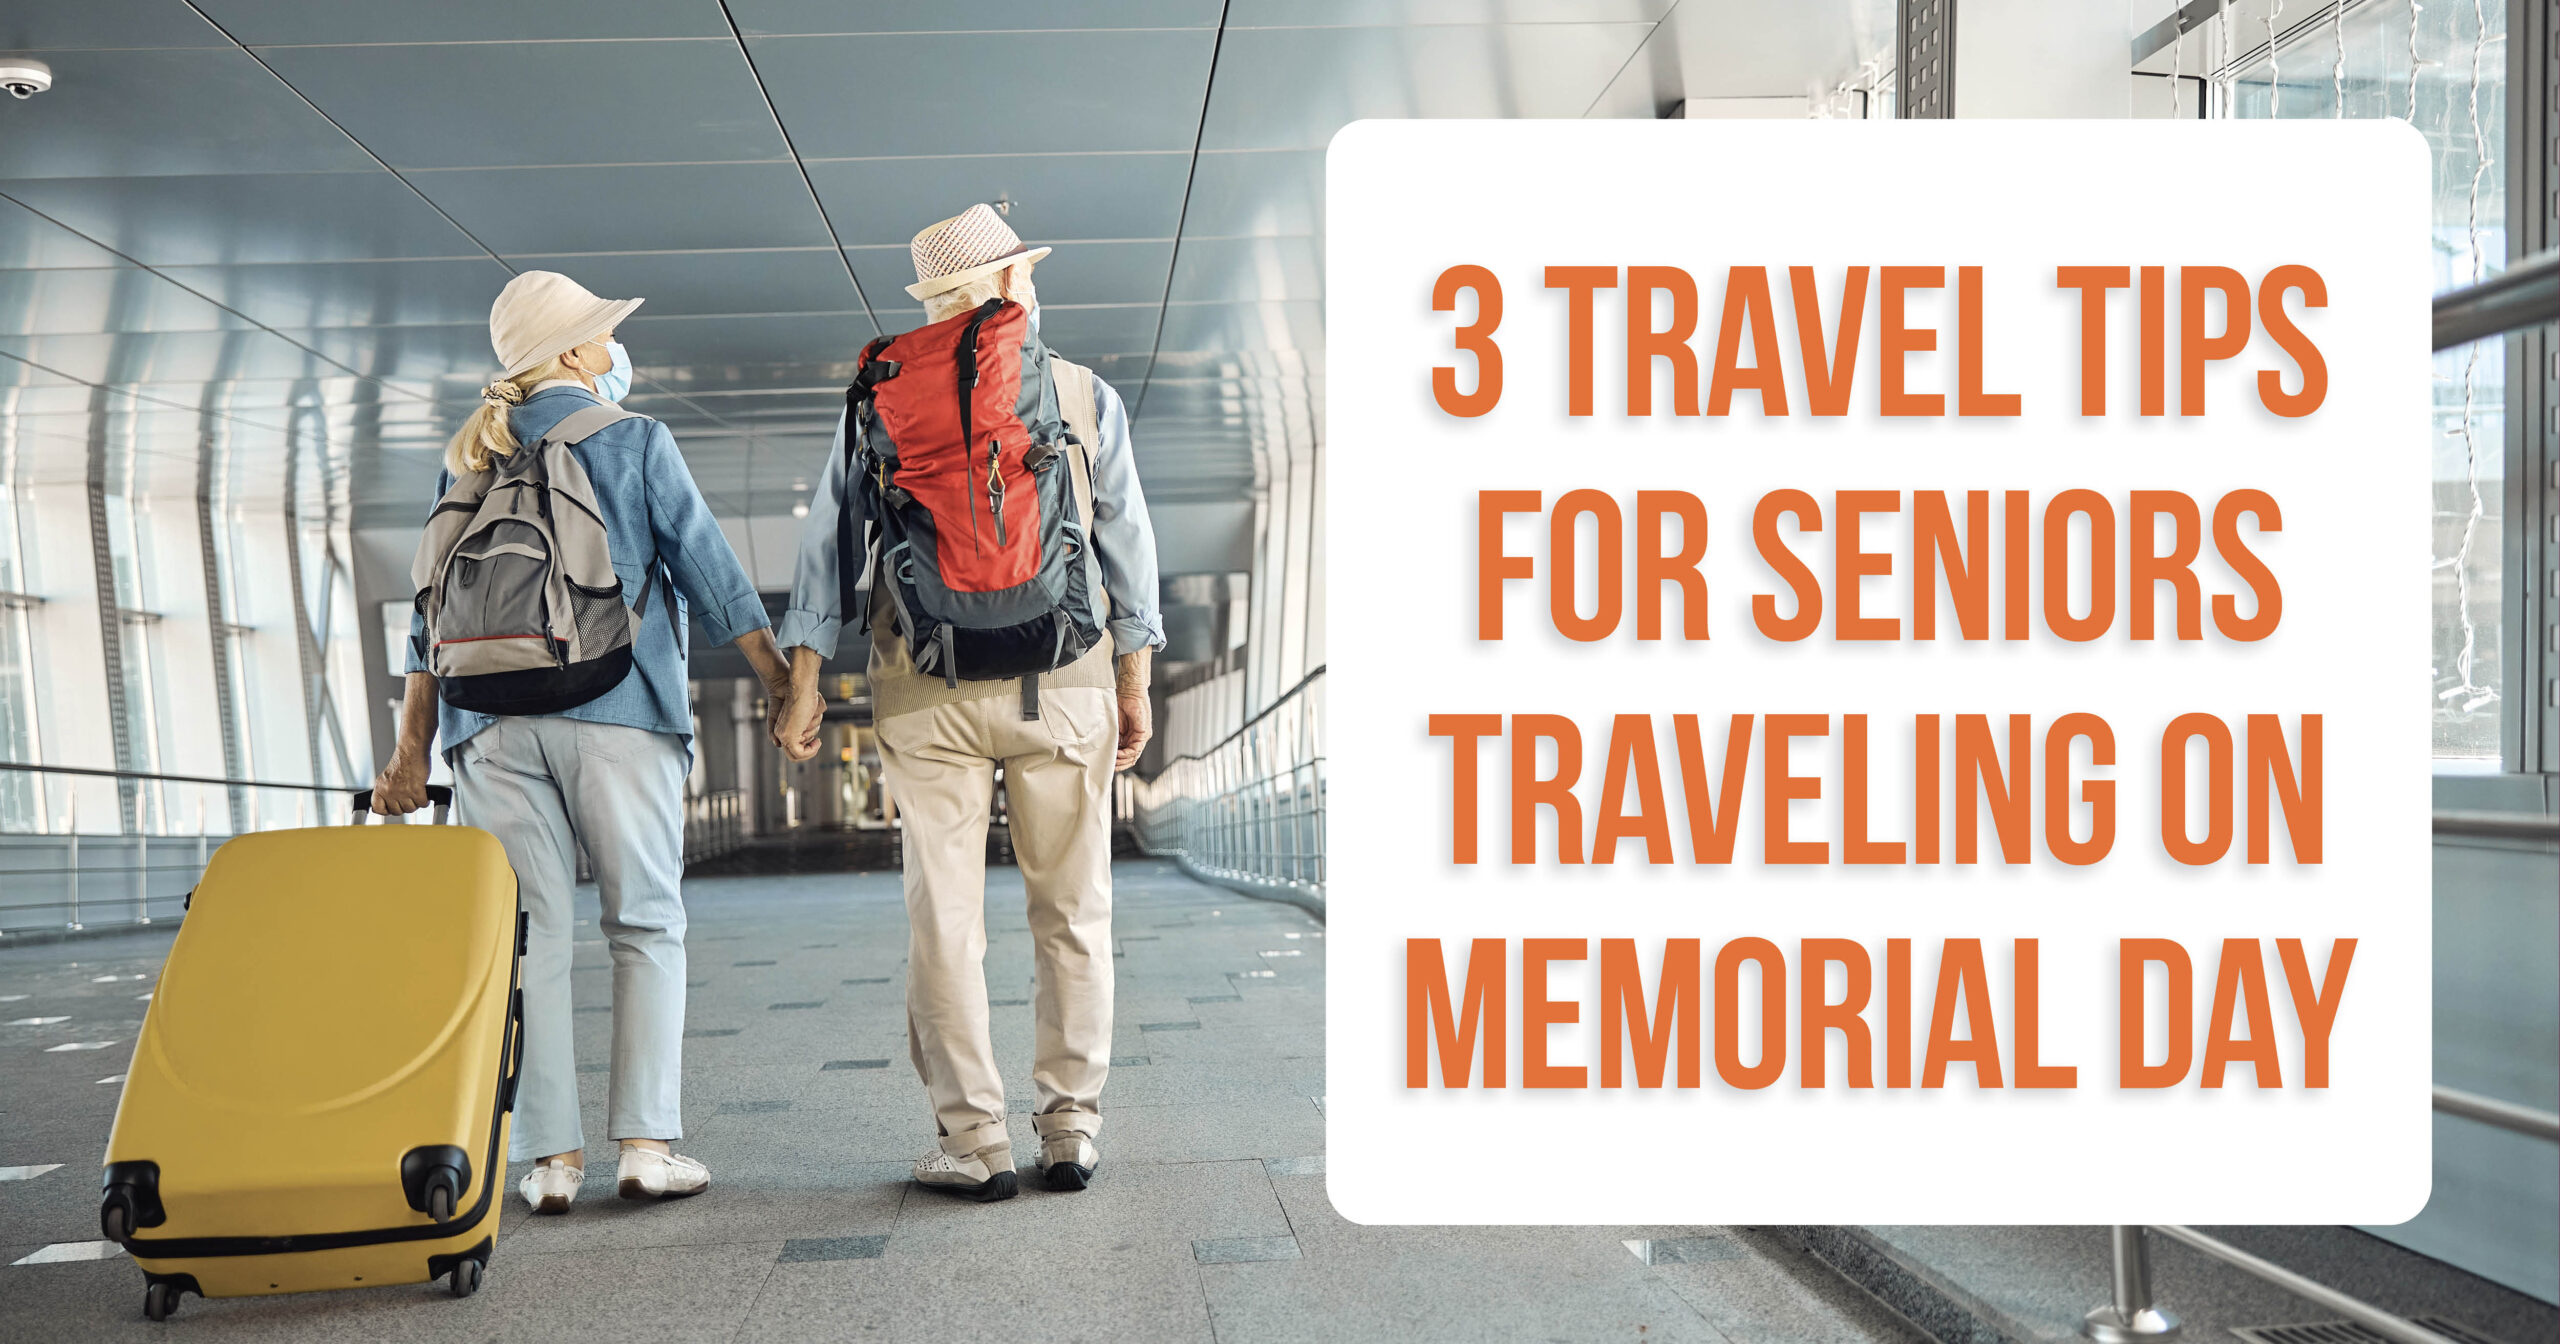 3 Travel Tips for Seniors Traveling on Memorial Day